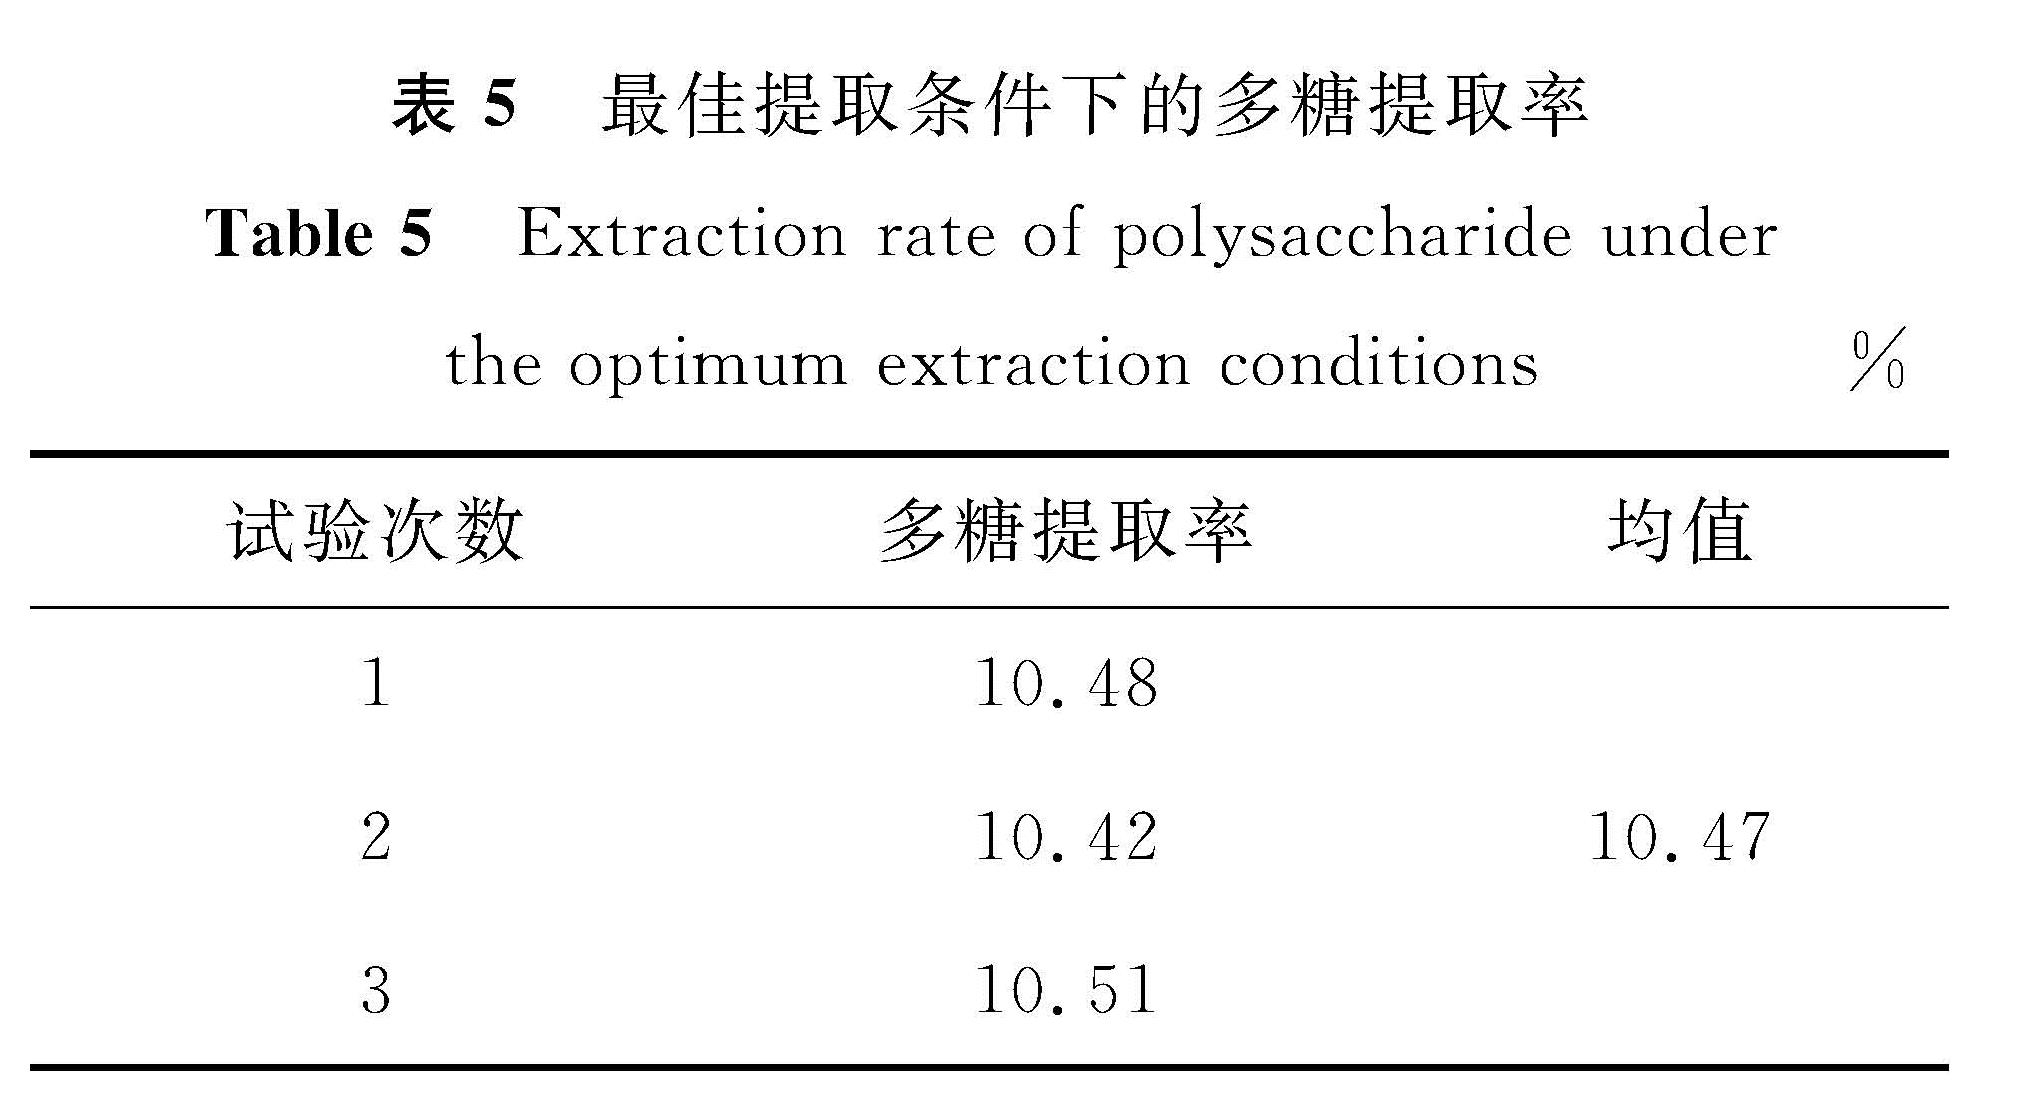 表5 最佳提取条件下的多糖提取率<br/>Table 5 Extraction rate of polysaccharide under the optimum extraction conditions